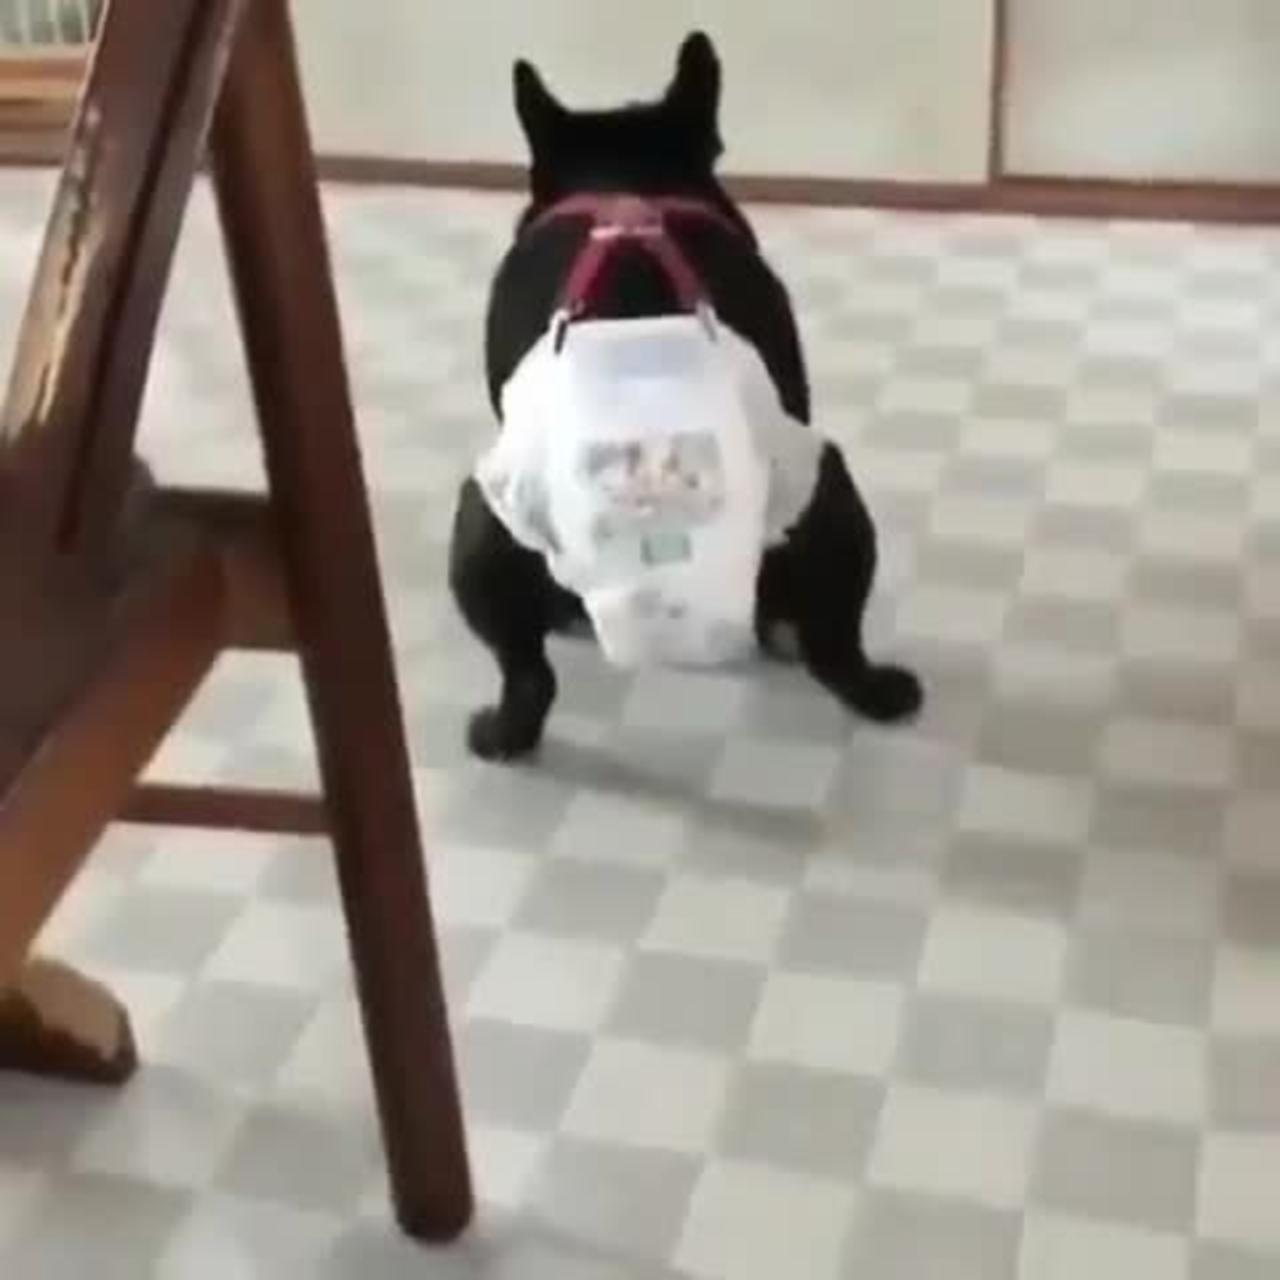 A dog in a paper diaper.